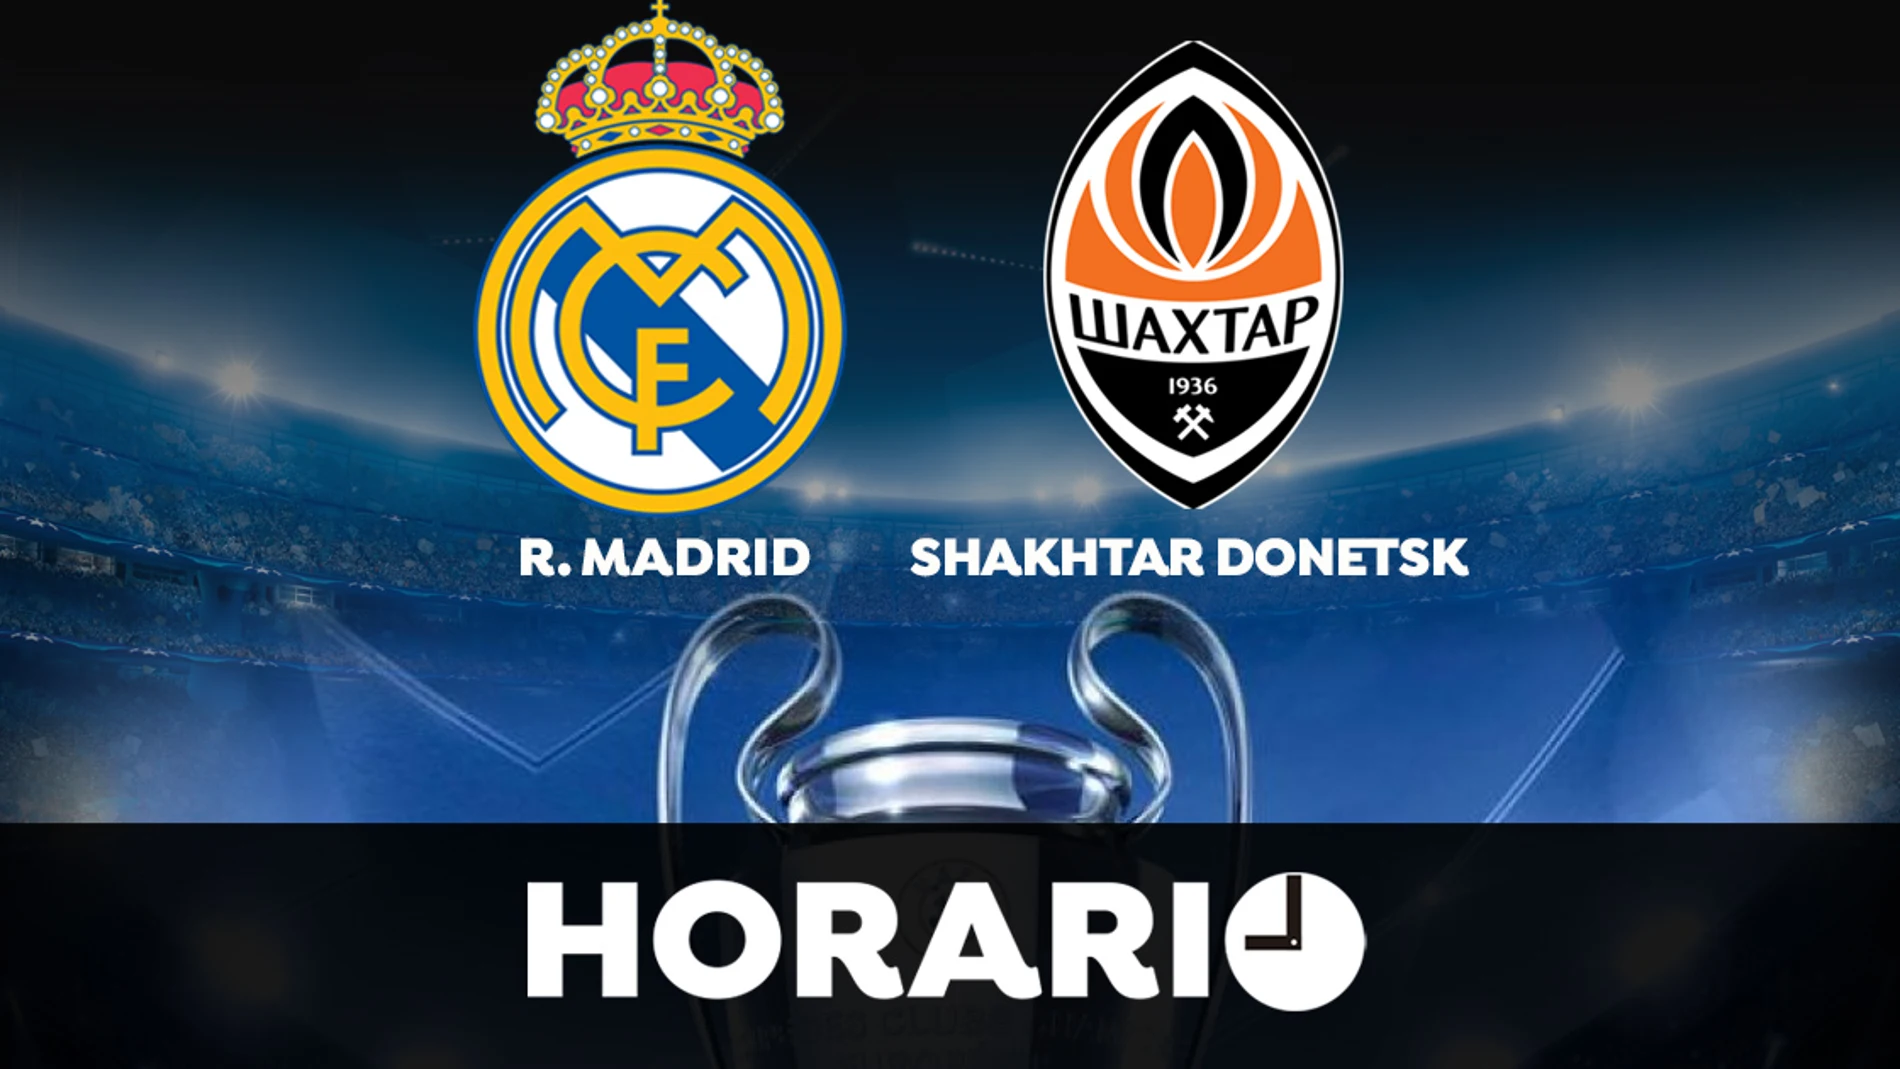 Real Madrid - Shakhtar Donetsk: Horario y donde ver el partido de la Champions League en directo